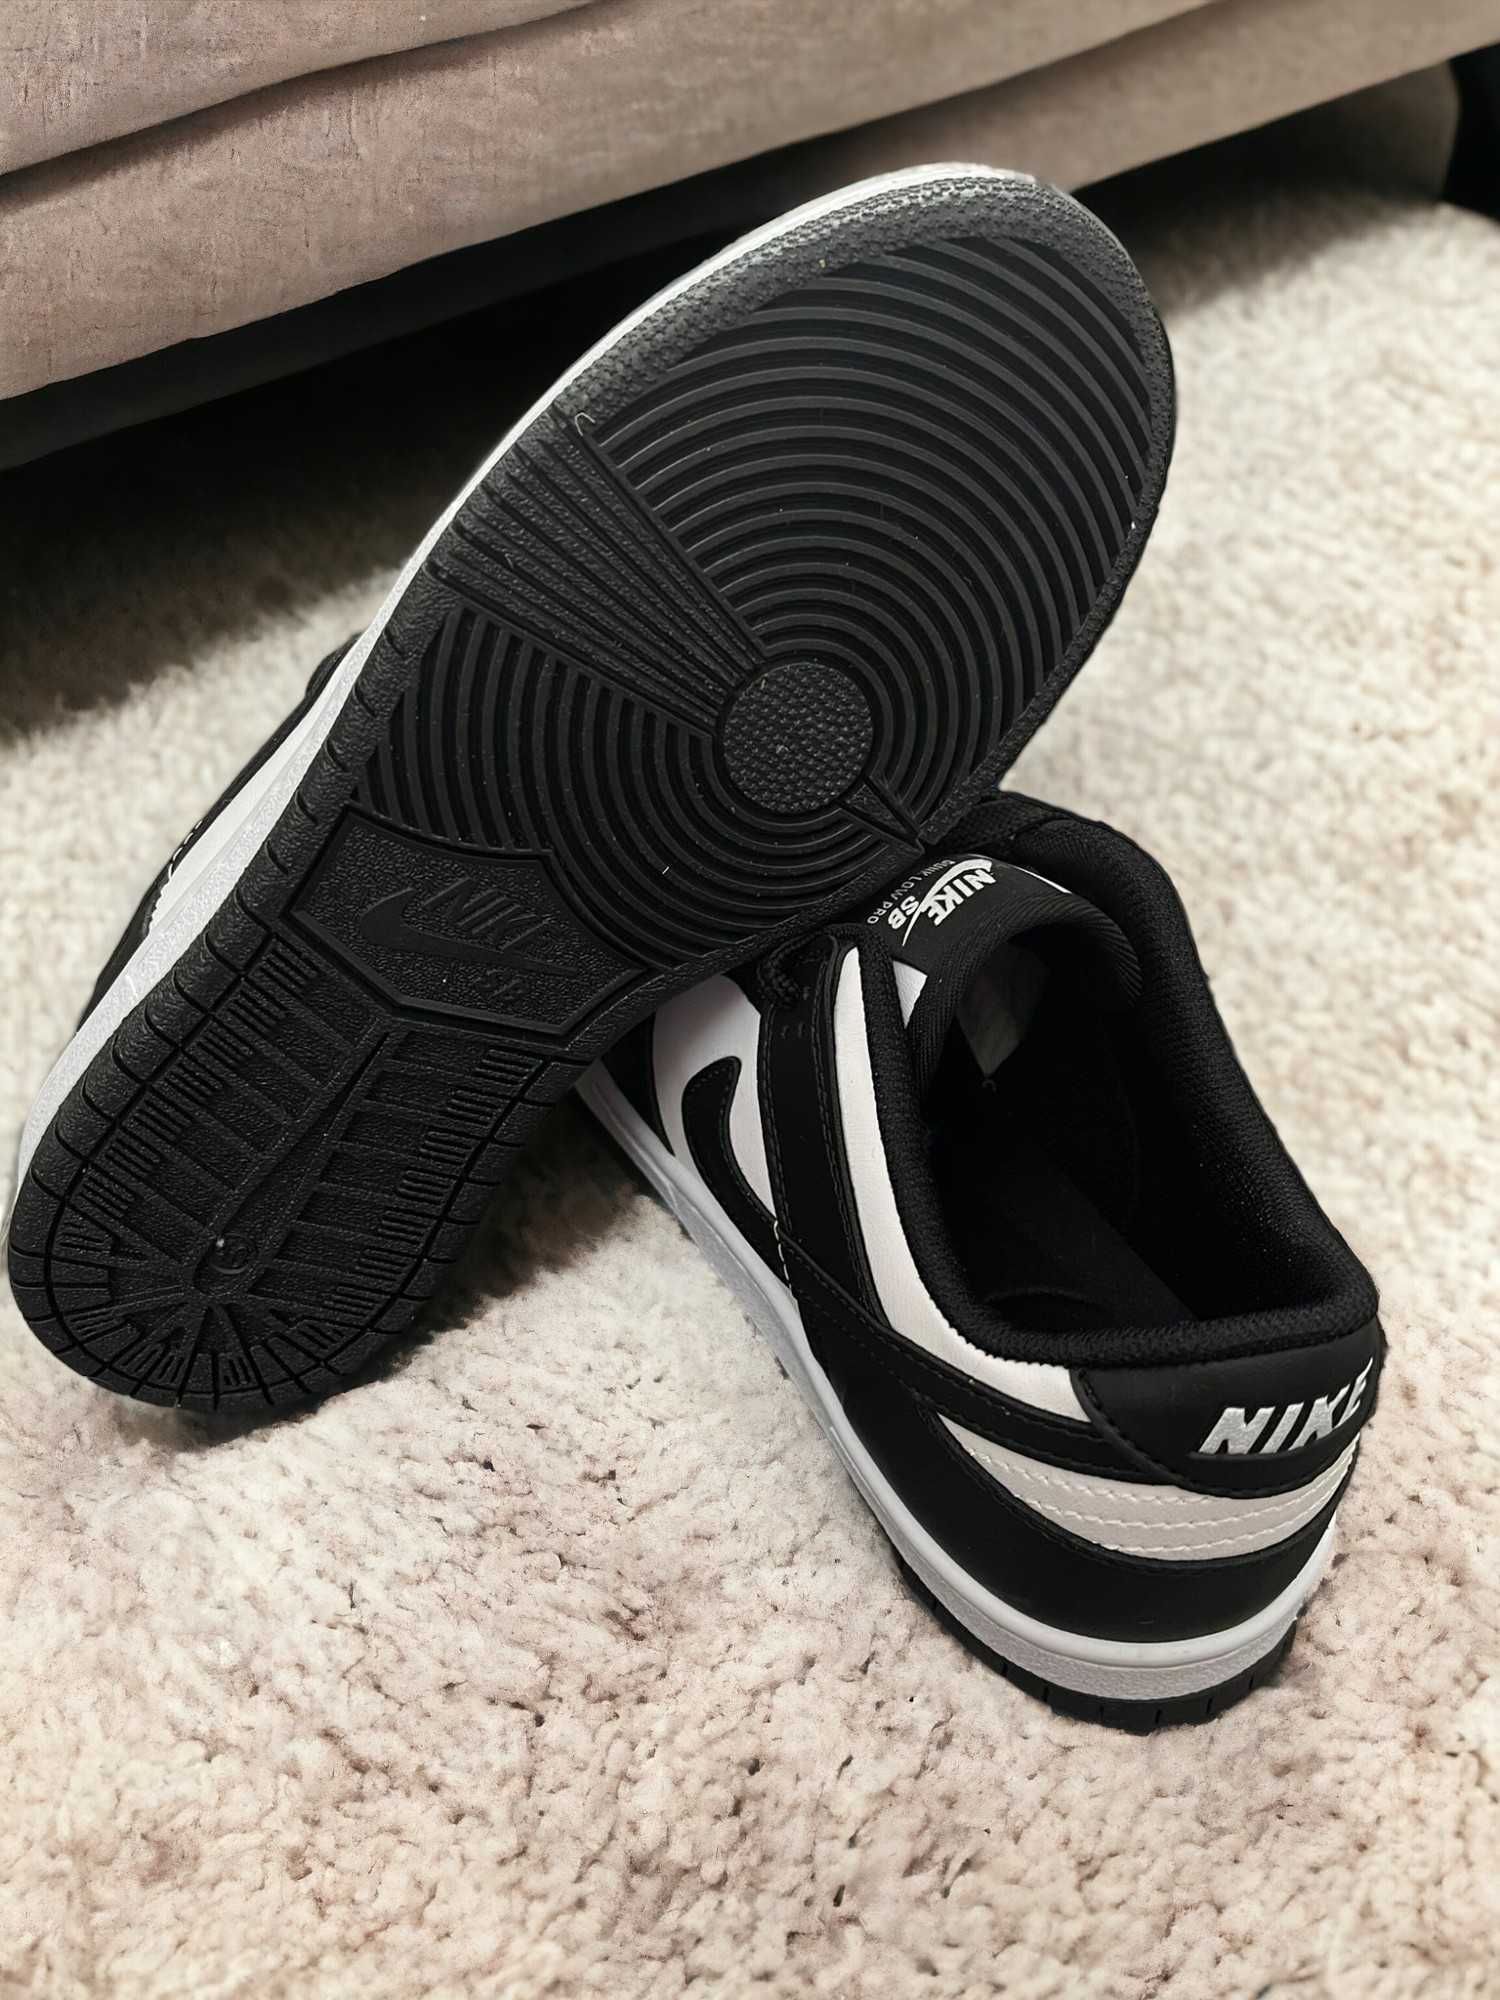 Nike Dunk Black And White / Adidasi Unisex